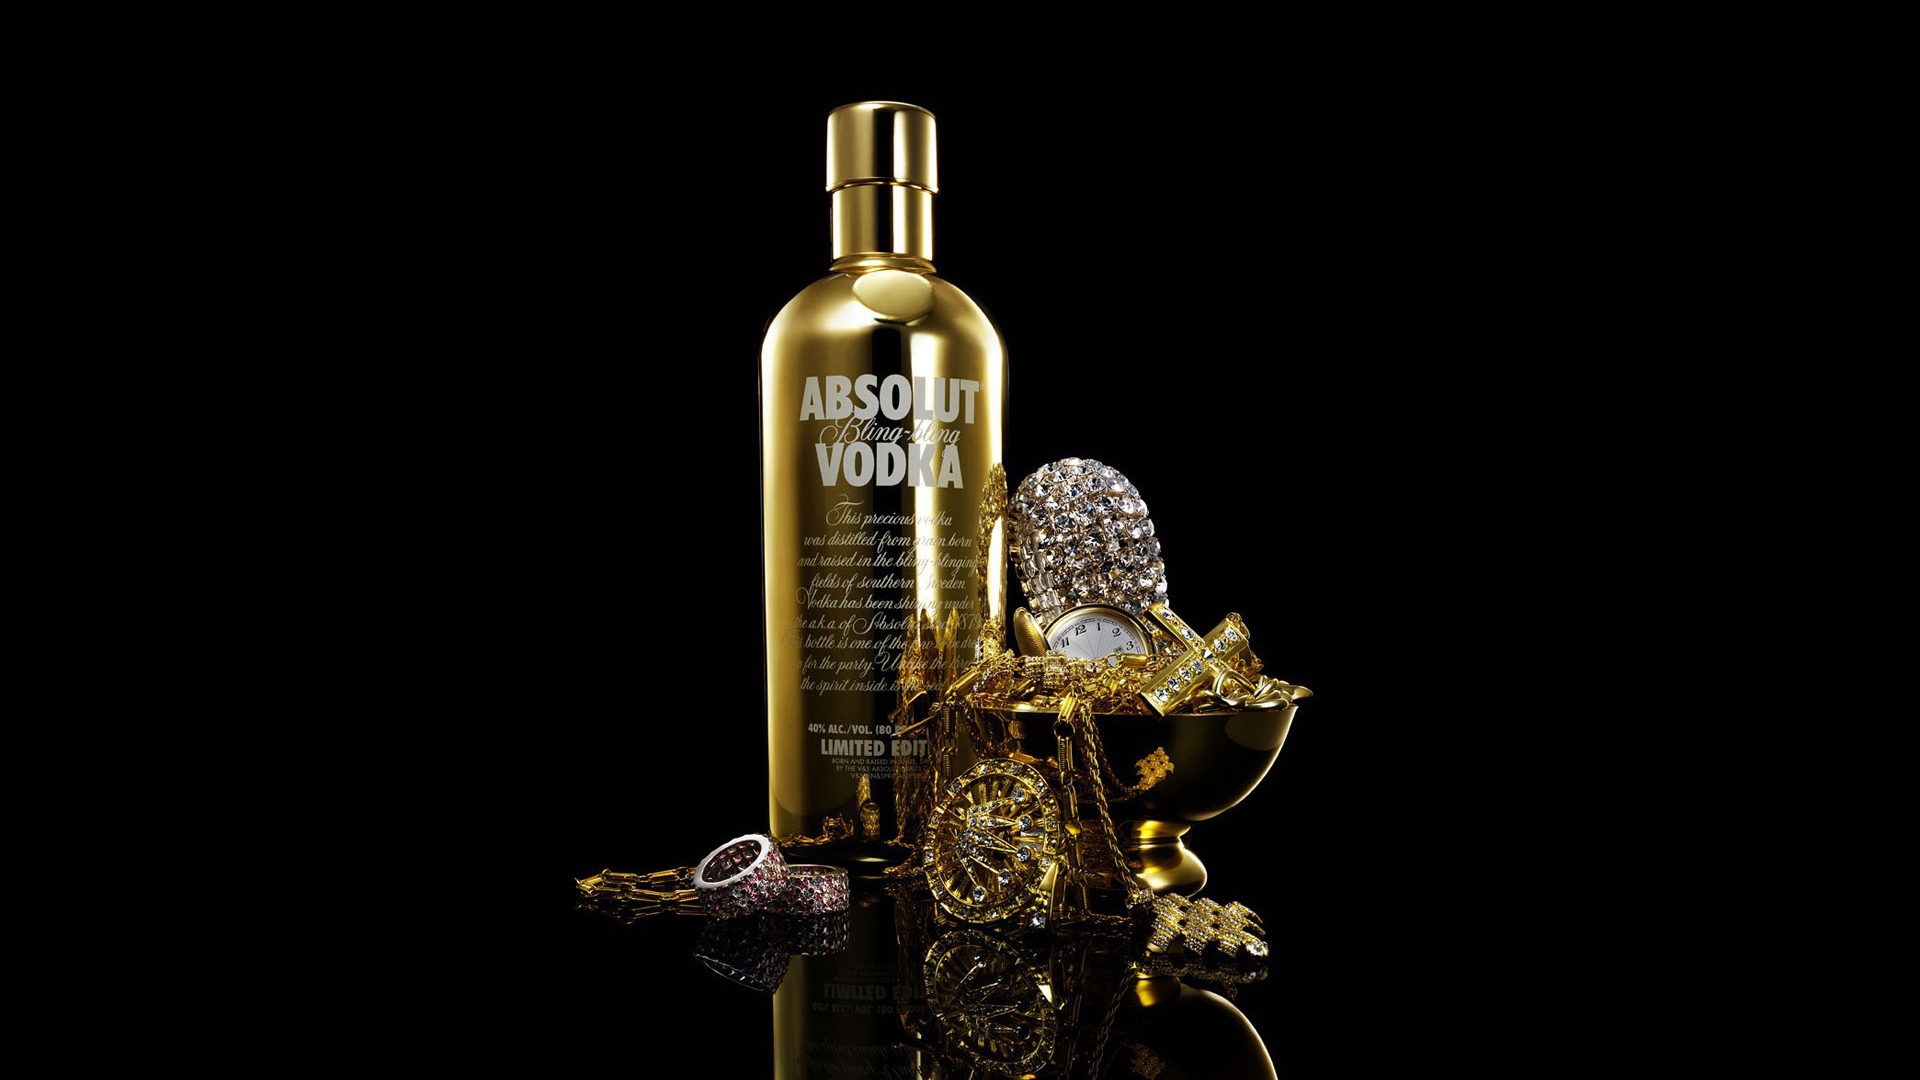 Gold bottle of Absolut Vodka